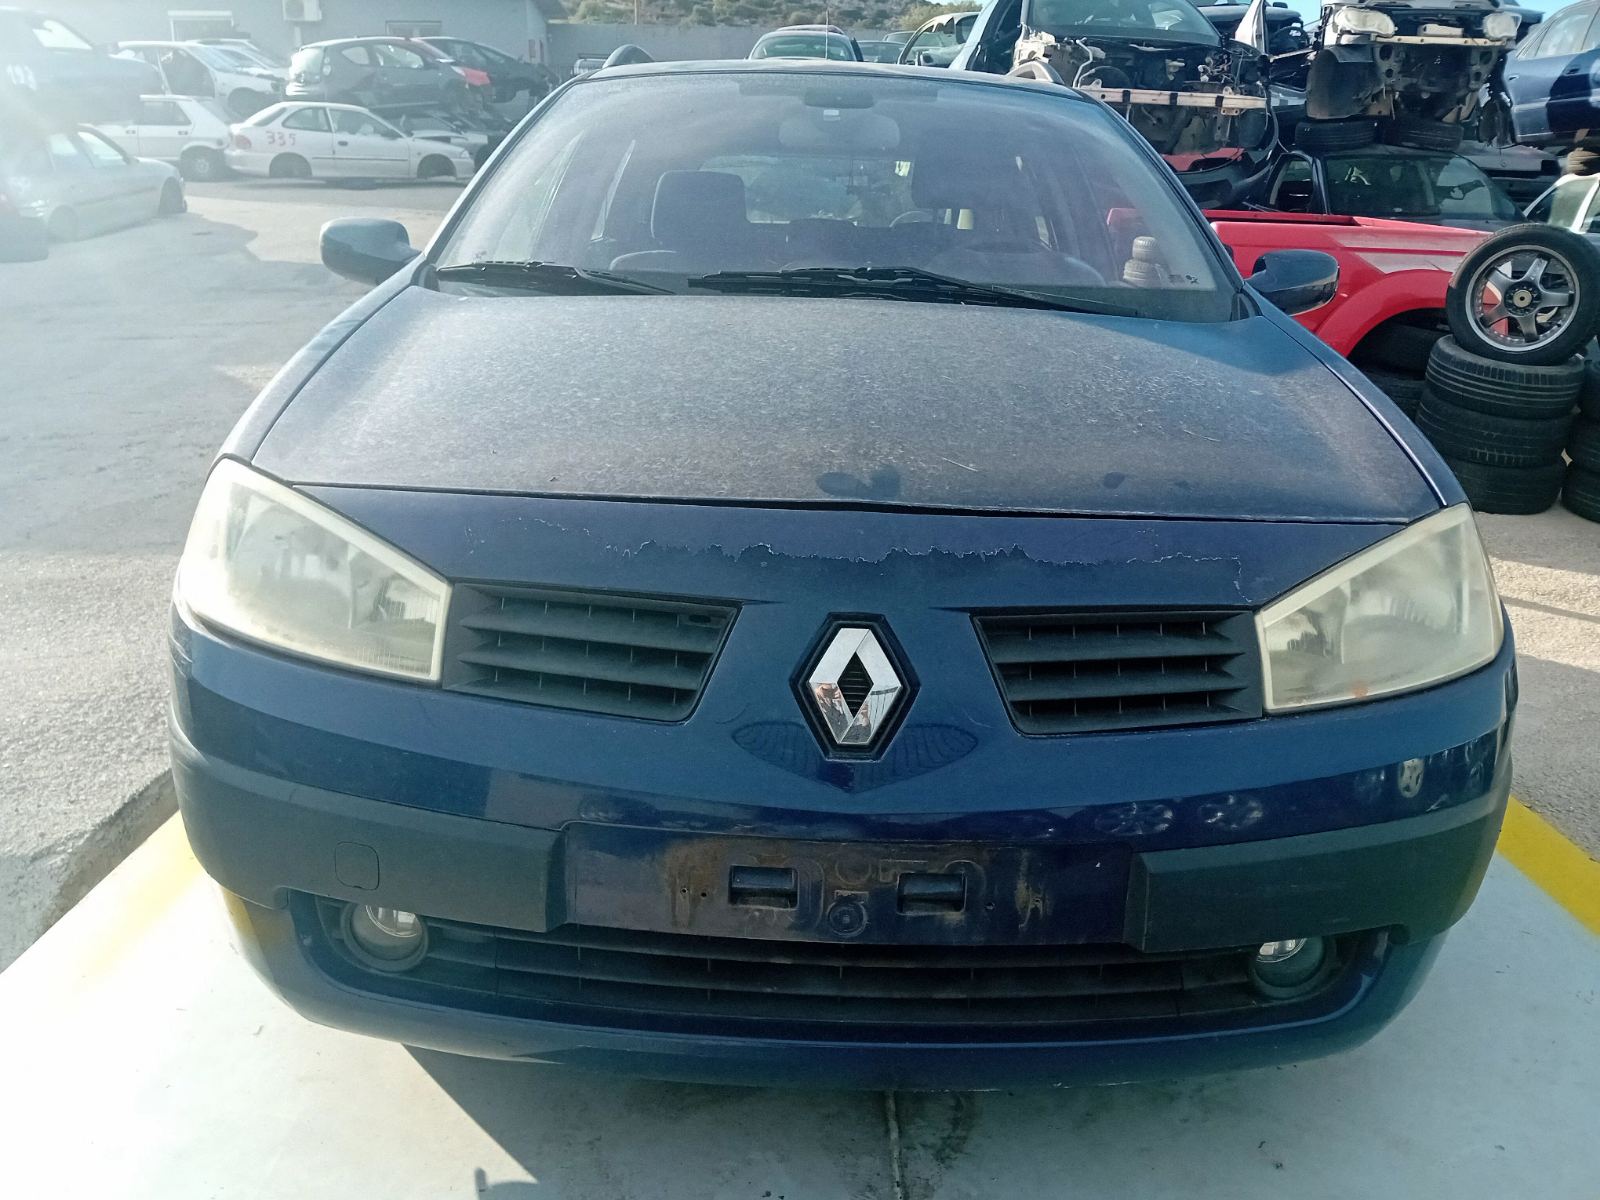 Μετώπη Renault Megane ’05